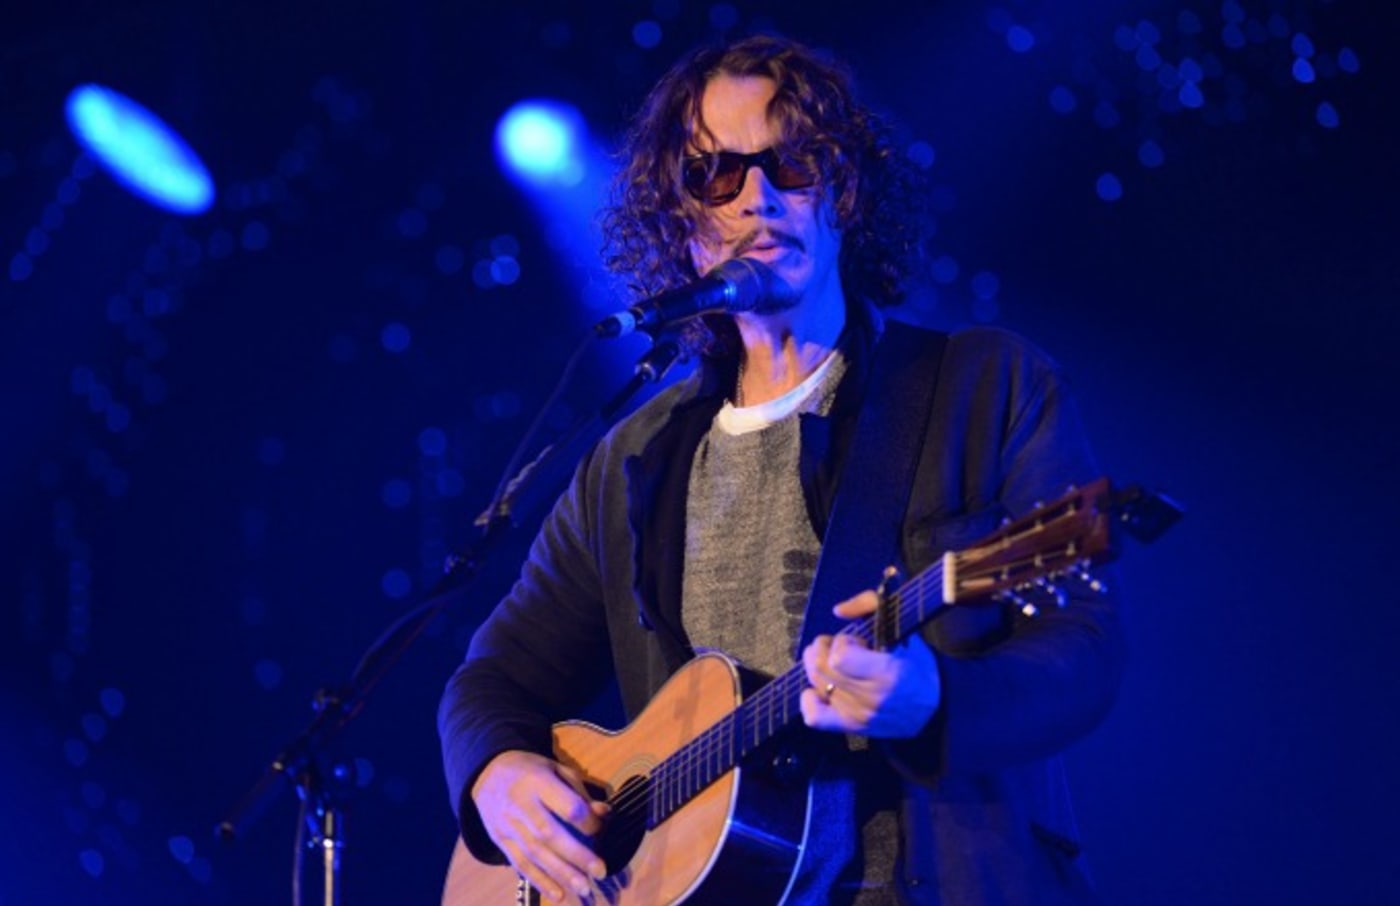 Chris Cornell of Soundgarden.